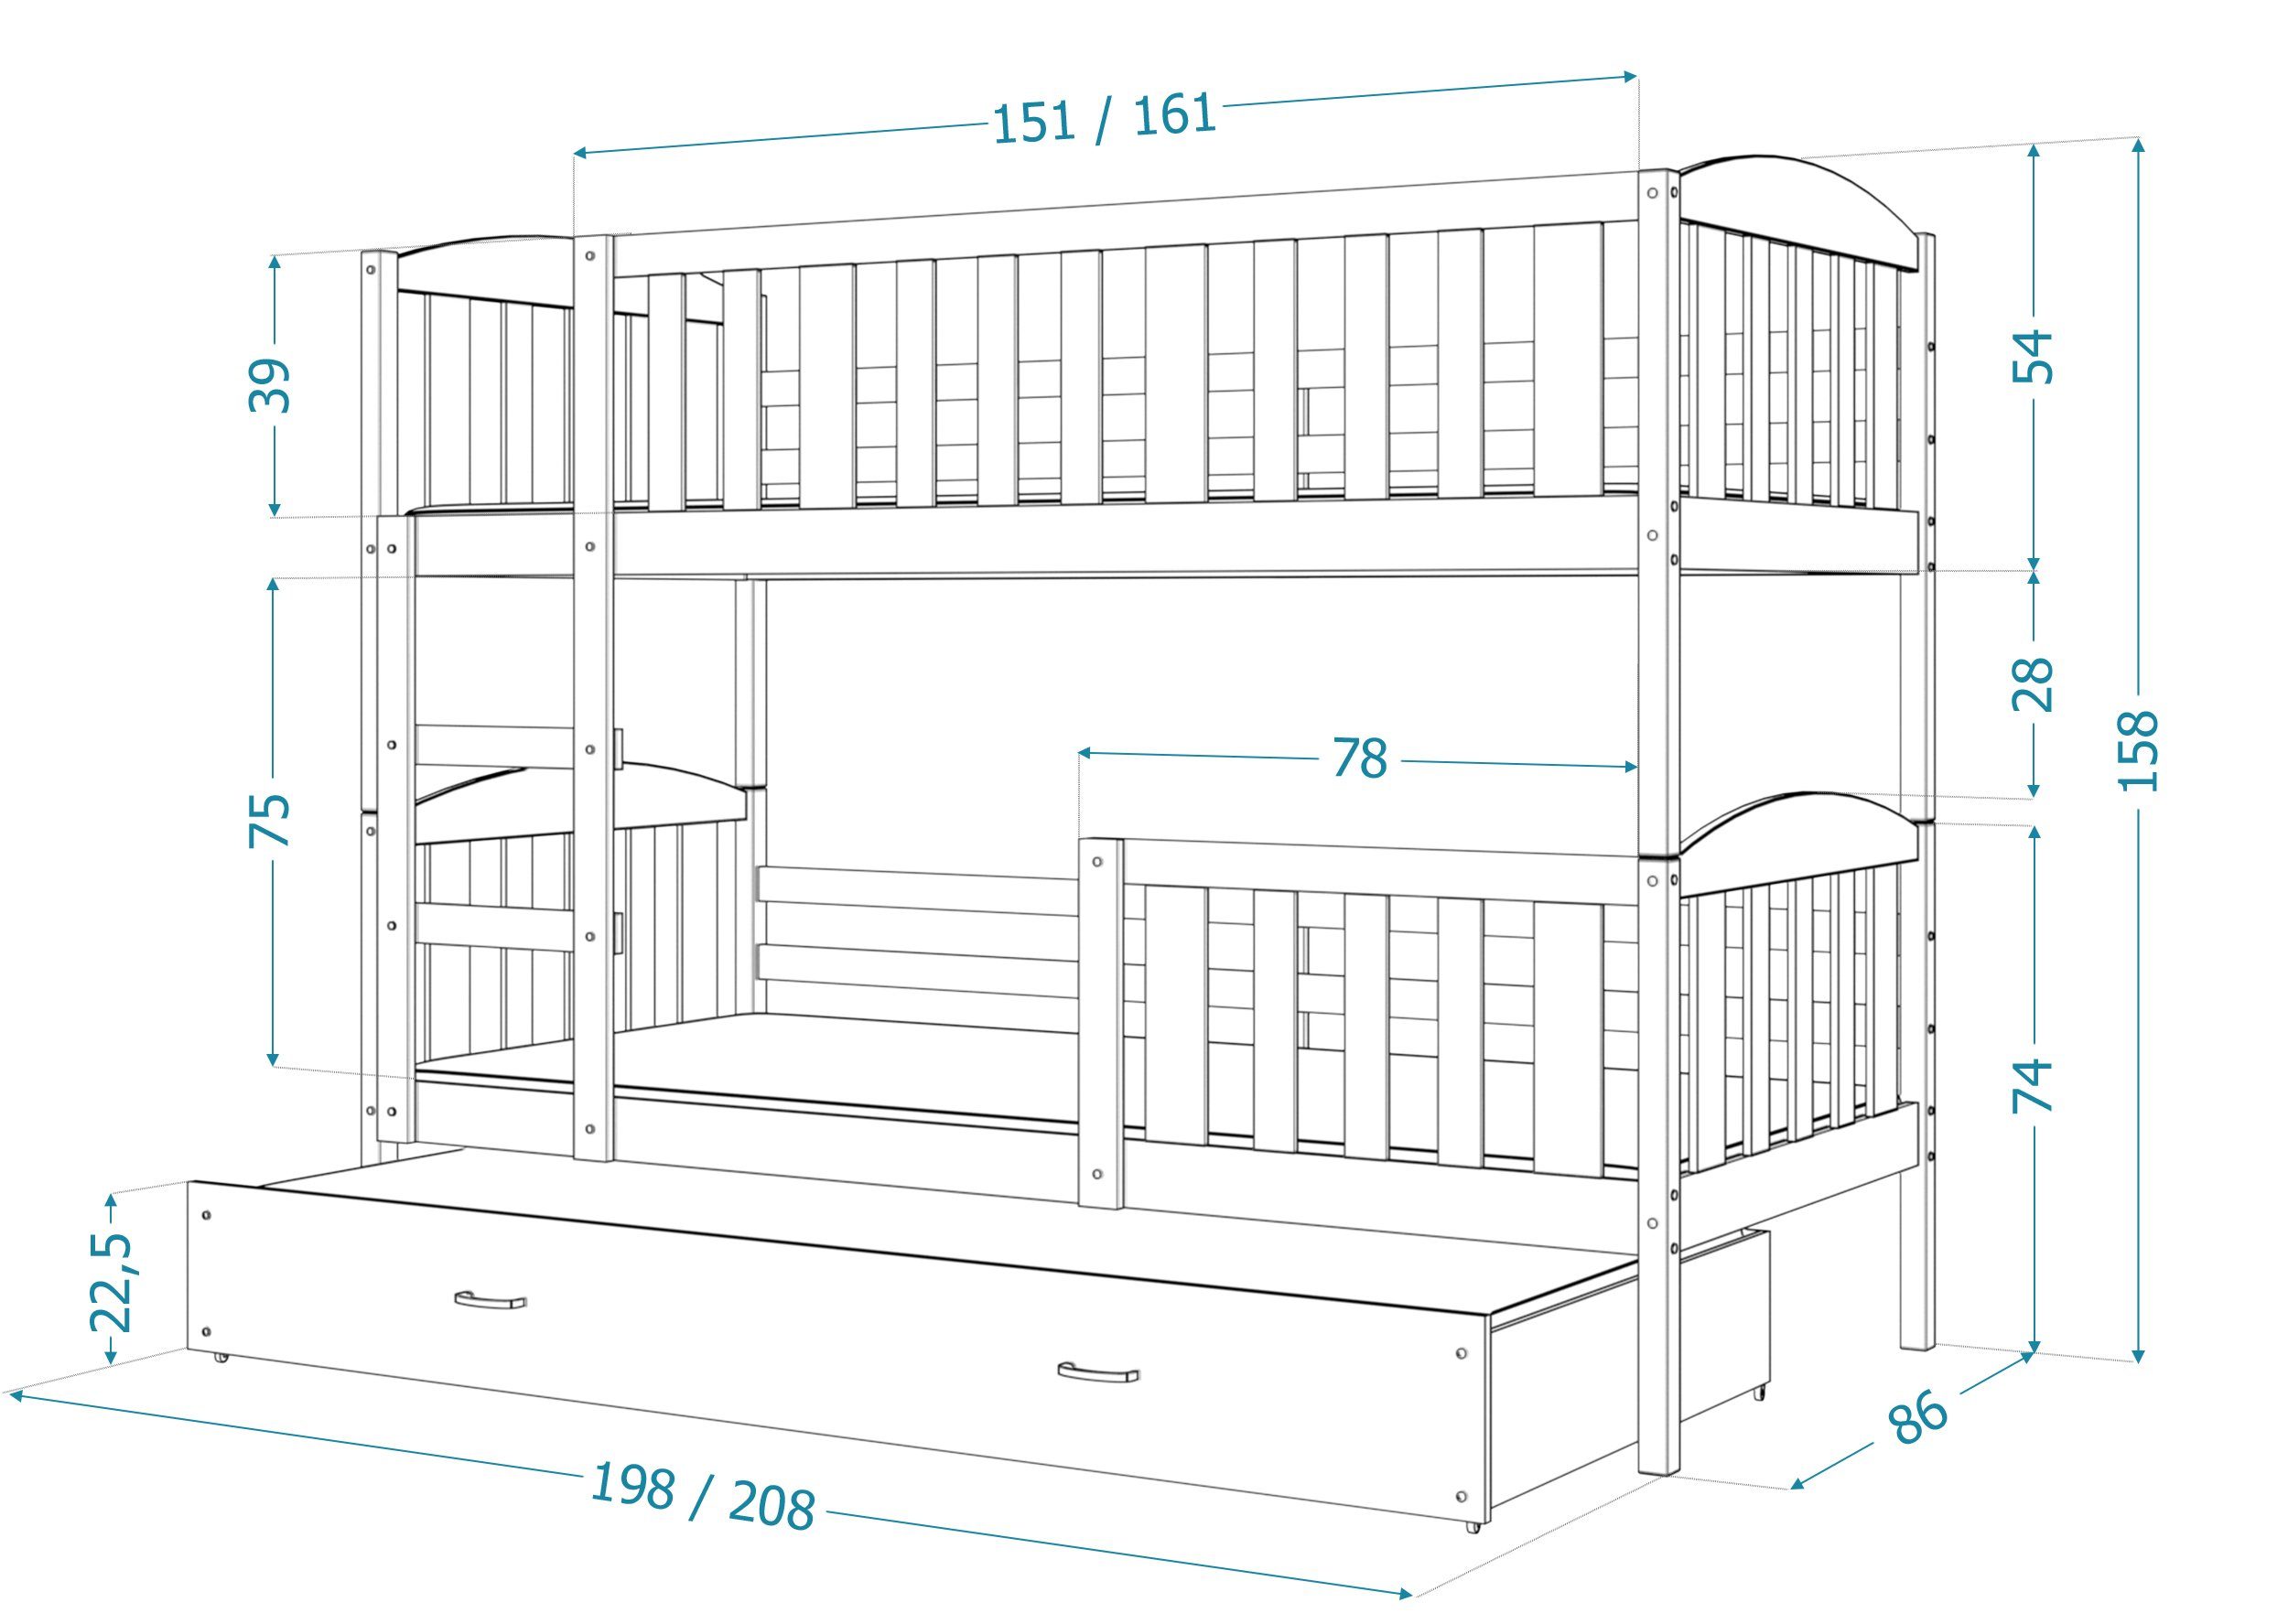 Bett Kinderbett Weiß Sicherheitsbarriere, Massivholz, und Schaummatratzen), Möbelplatte Rupert Grau Lattenrost, (Flexibler Schublade, Siblo